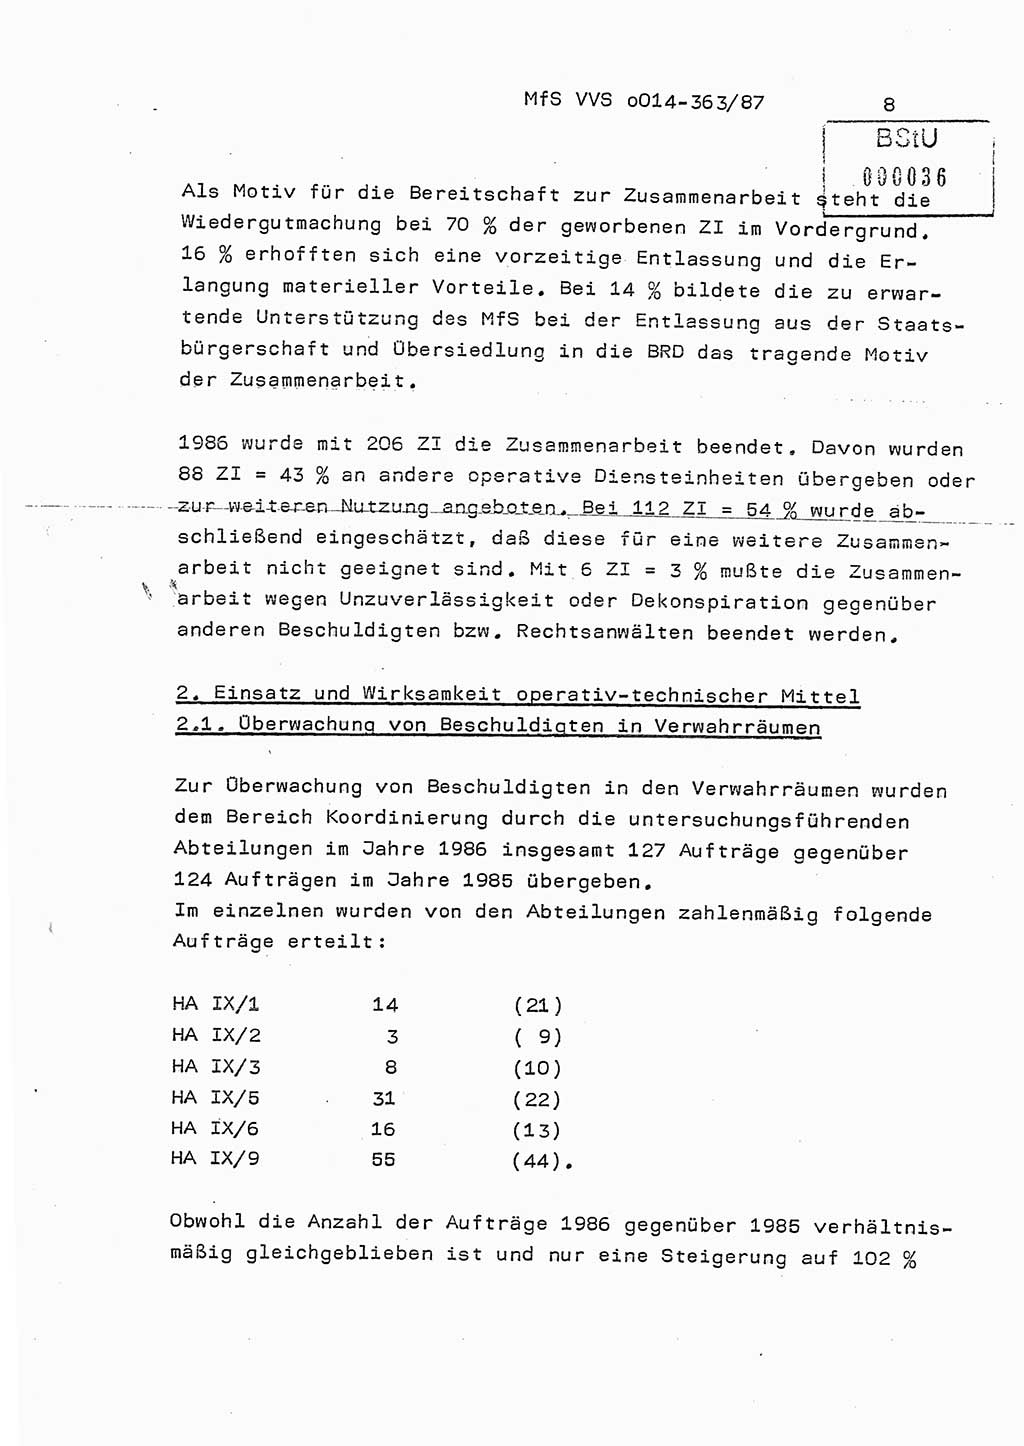 Ministerium für Staatssicherheit (MfS) [Deutsche Demokratische Republik (DDR)], Hauptabteilung (HA) Ⅸ/ Auswertungs- und Kontrollgruppe (AKG), Bereich Koordinierung, Jahresanalyse, Vertrauliche Verschlußsache (VVS) o014-363/87, Berlin 1987, Seite 8 (J.-Anal. MfS DDR HA Ⅸ/AKG VVS o014-363/87 1986, S. 8)